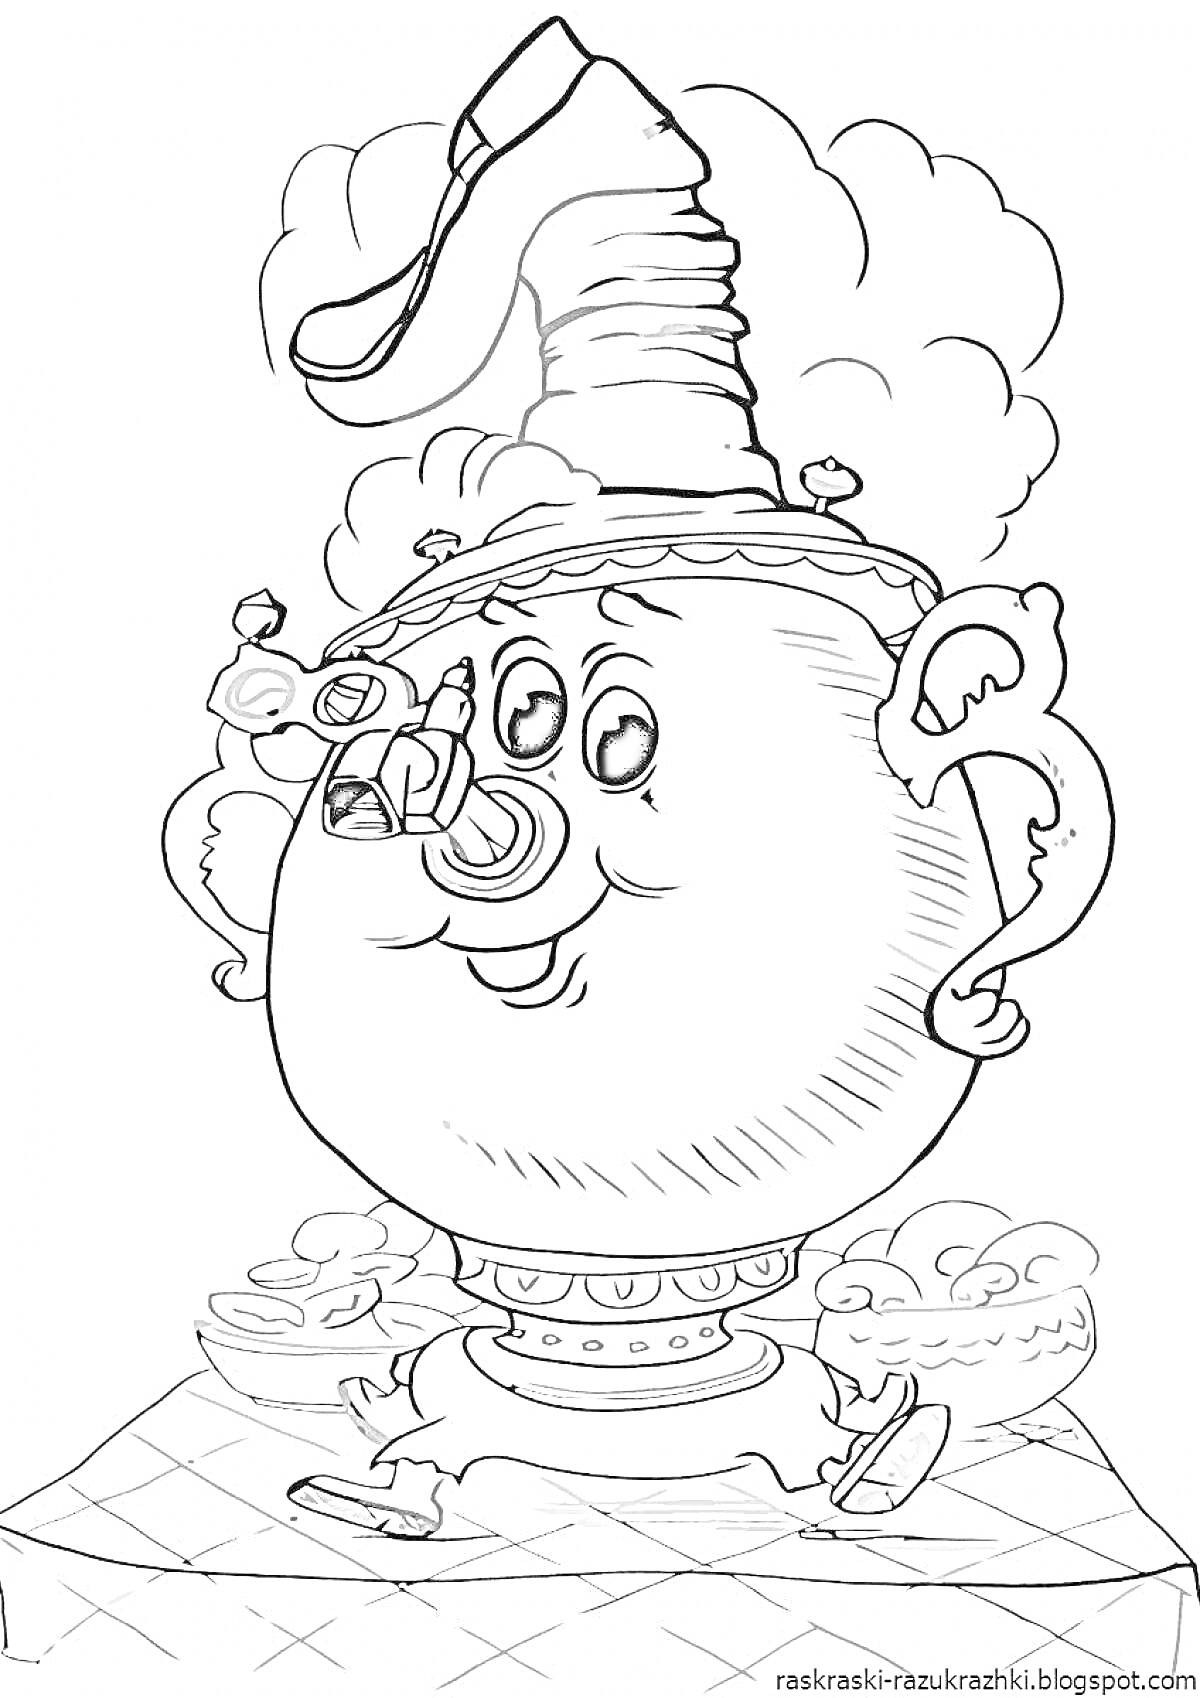 Раскраска Самовар с чаем, пирогами и дымом из трубы на клетчатой скатерти